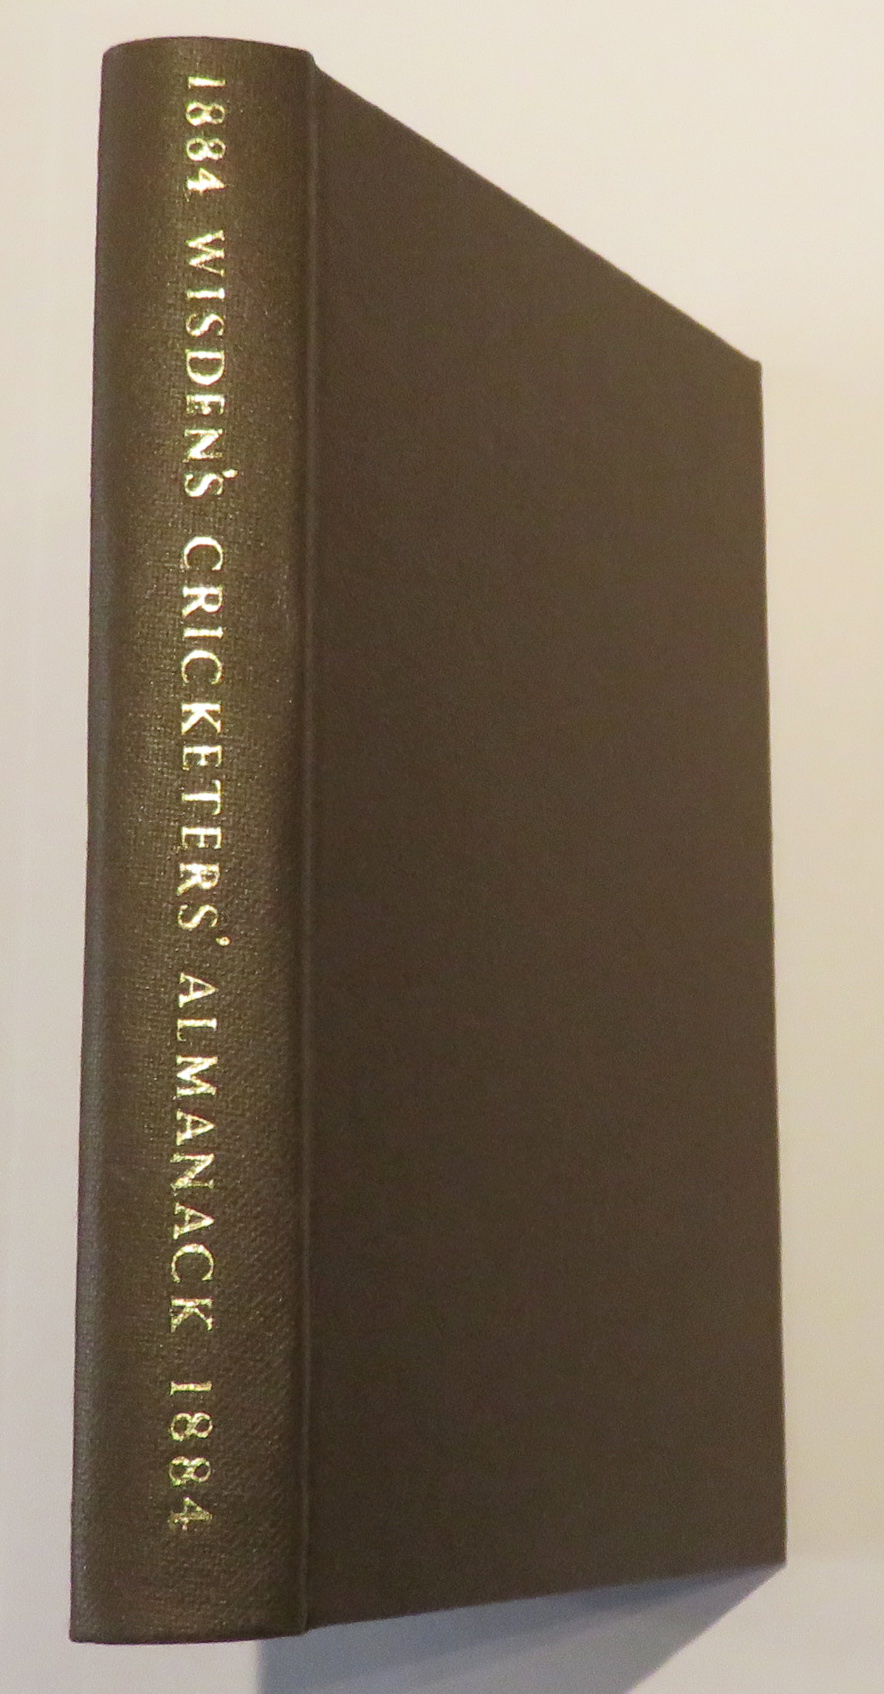 John Wisden's Cricketers' Almanack For 1884